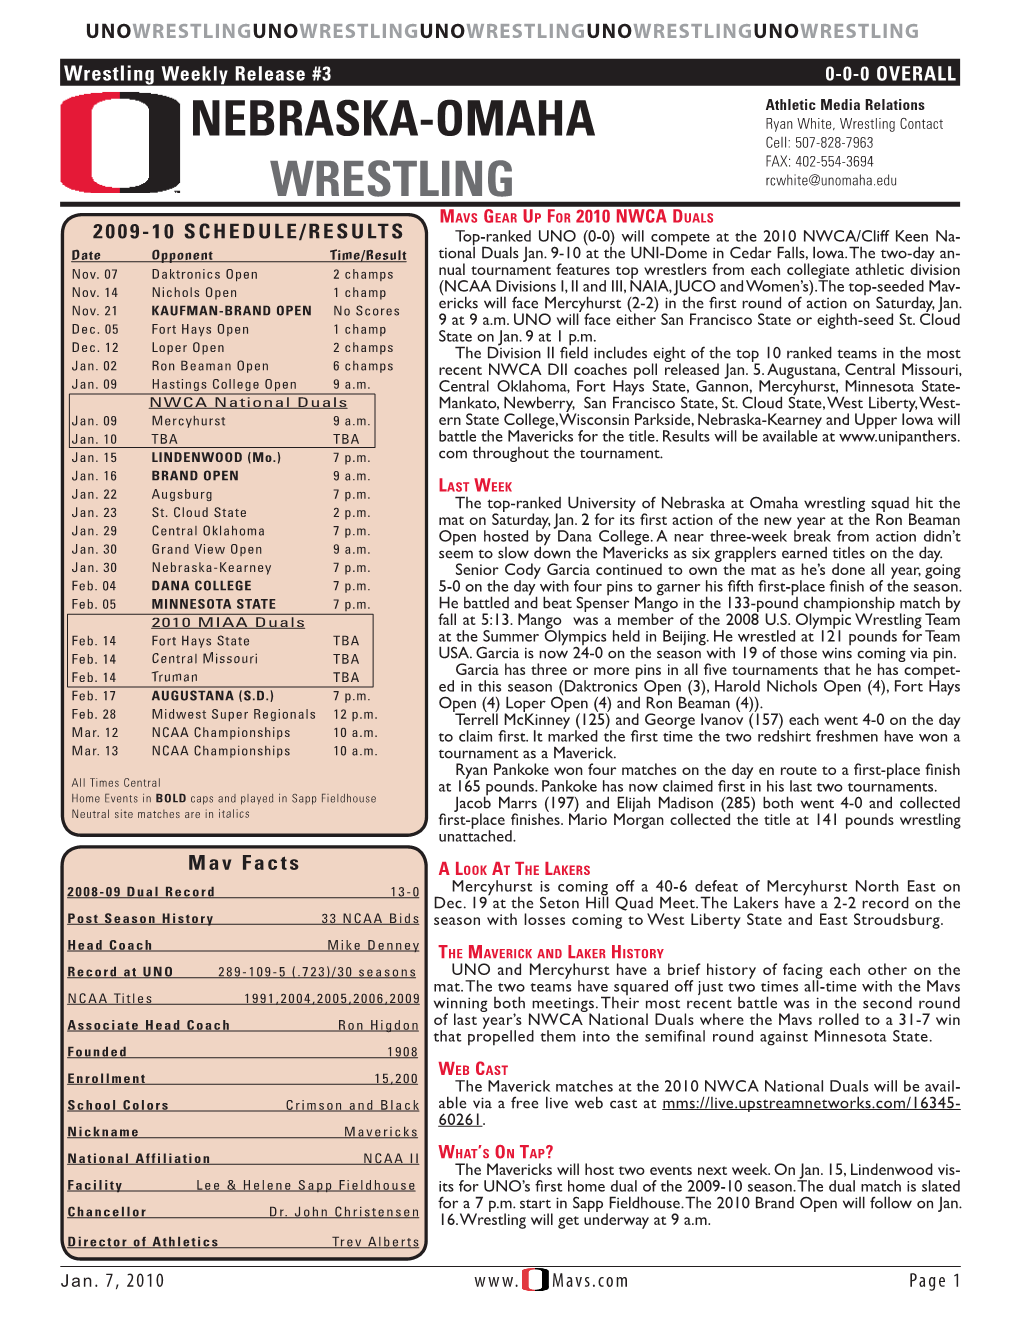 Nebraska-Omaha Wrestling